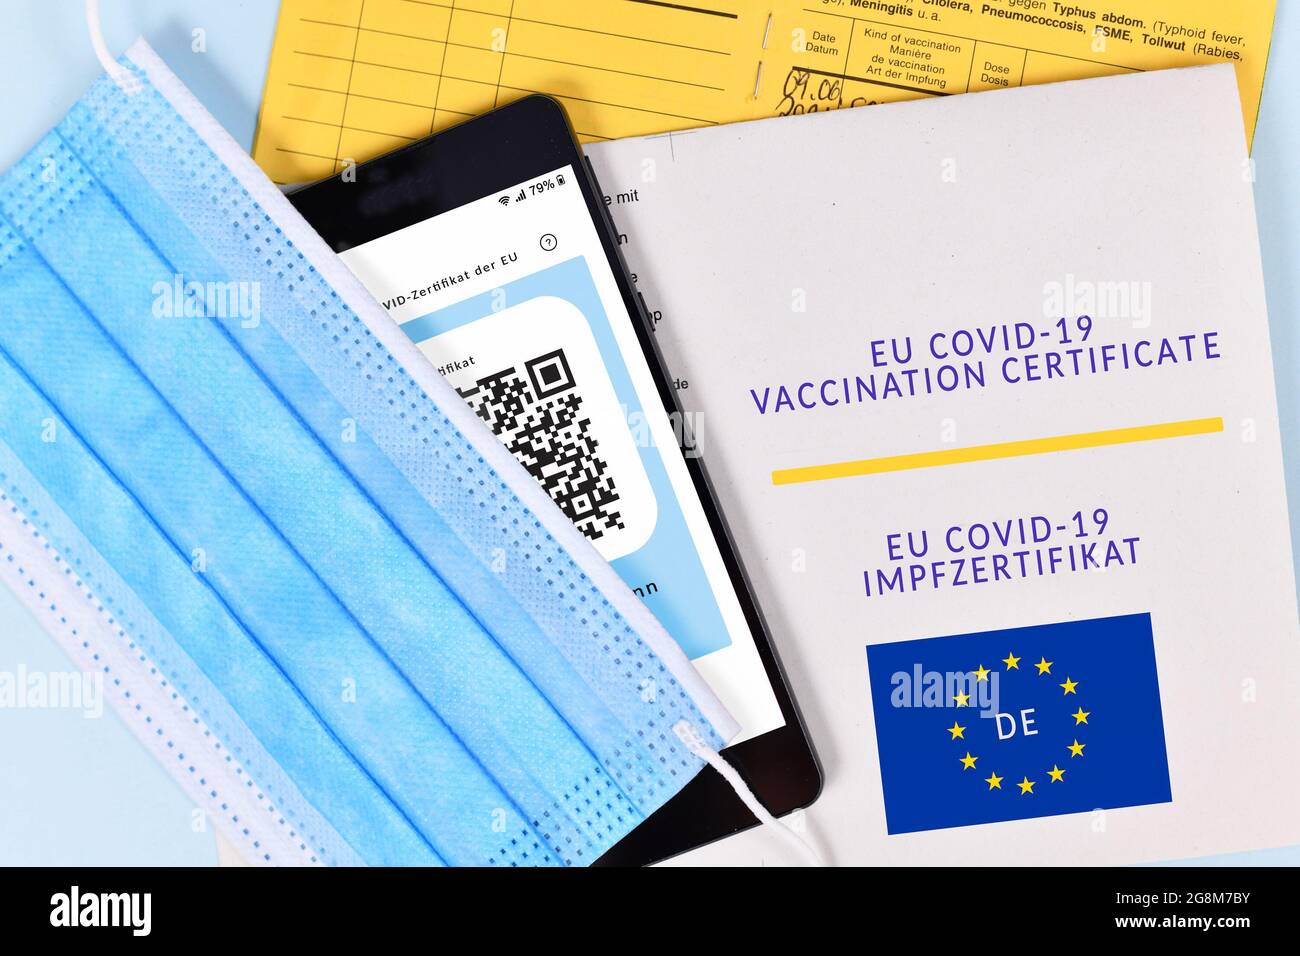 Certificato di vaccinazione EU COVID-19 su carta e digitale su telefono cellulare, passaporto del vaccino e maschera facciale Foto Stock